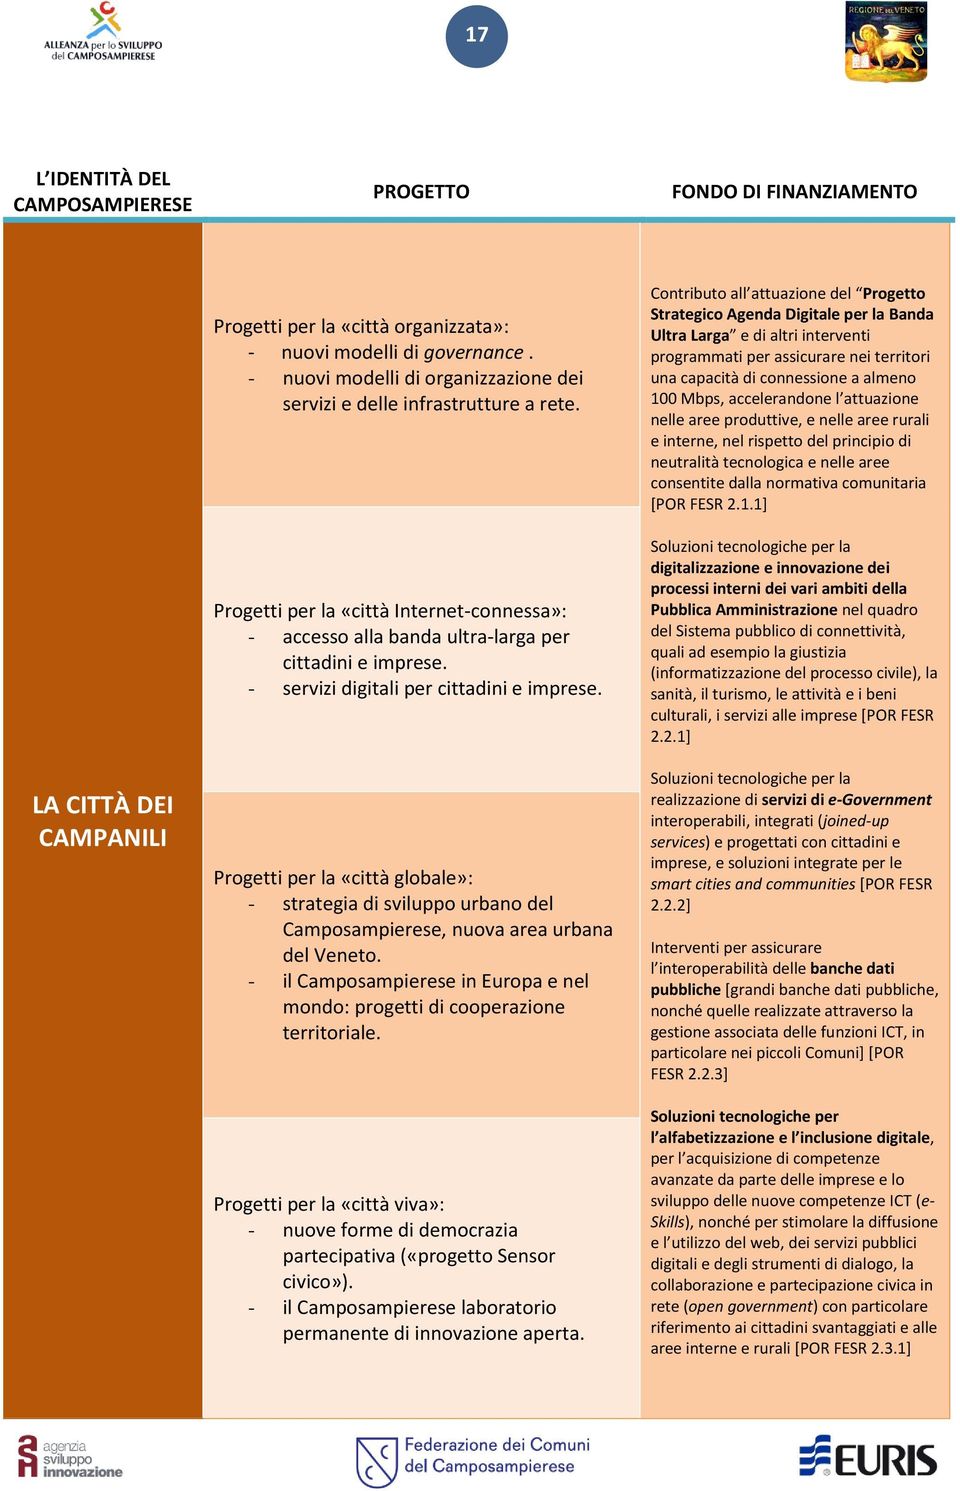 - servizi digitali per cittadini e imprese. Progetti per la «città globale»: - strategia di sviluppo urbano del Camposampierese, nuova area urbana del Veneto.